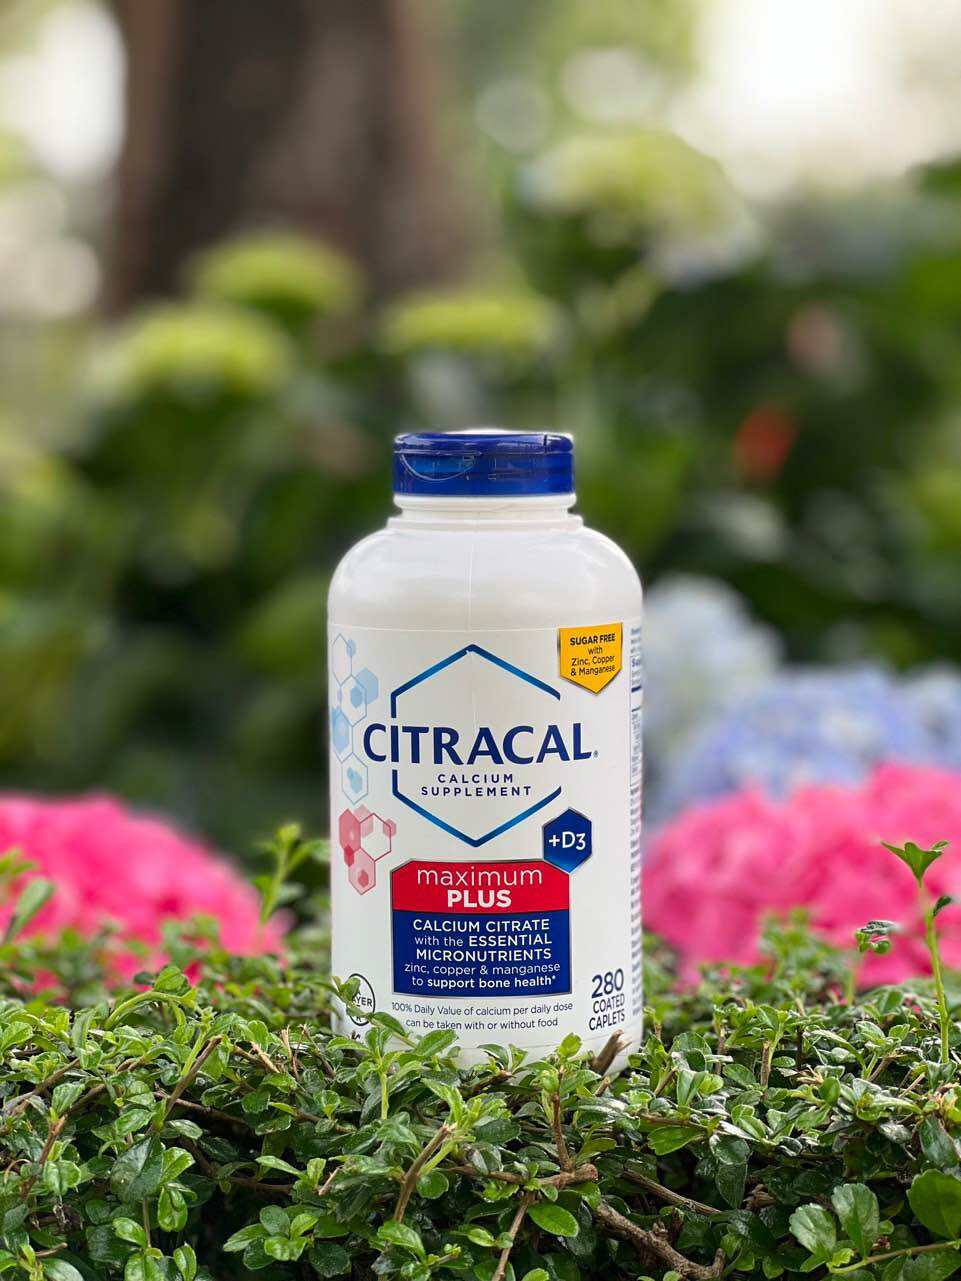 Citracal calcium supplement +D3 maximum plus 280 viên